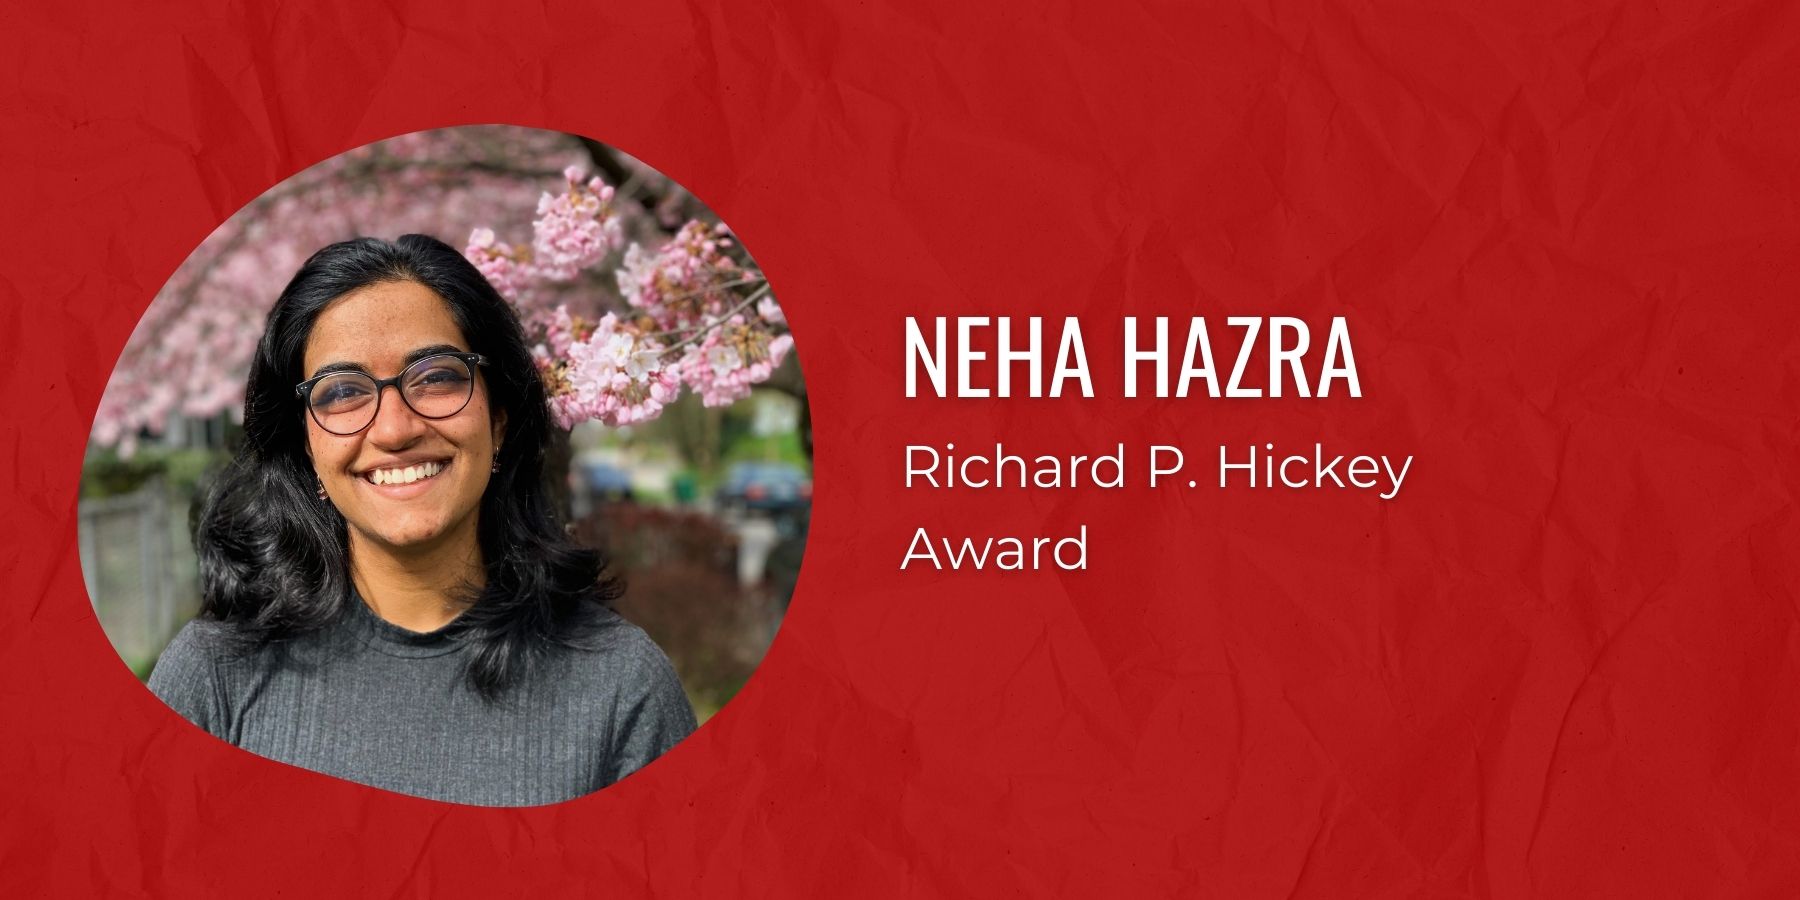 Photo of Neha Hazra and text Richard P. Hickey Award